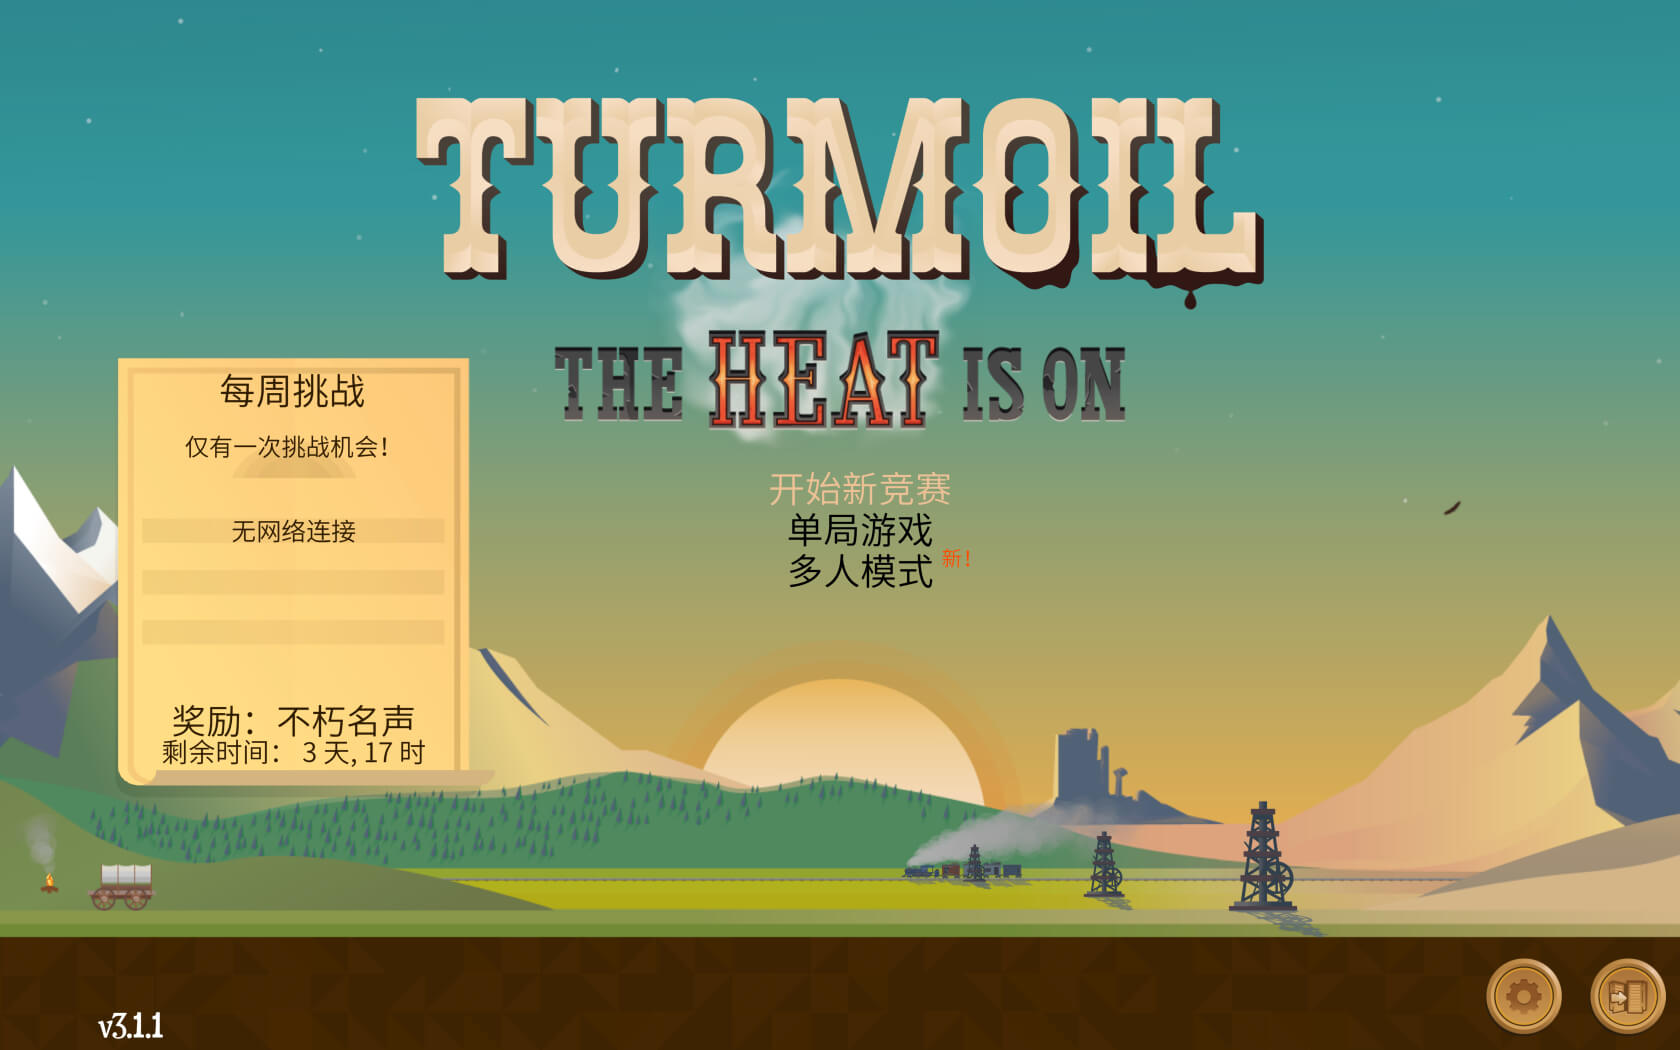 石油骚动 for Mac v3.1.3 Turmoil 中文原生版 含DLC热力沸腾 苹果电脑